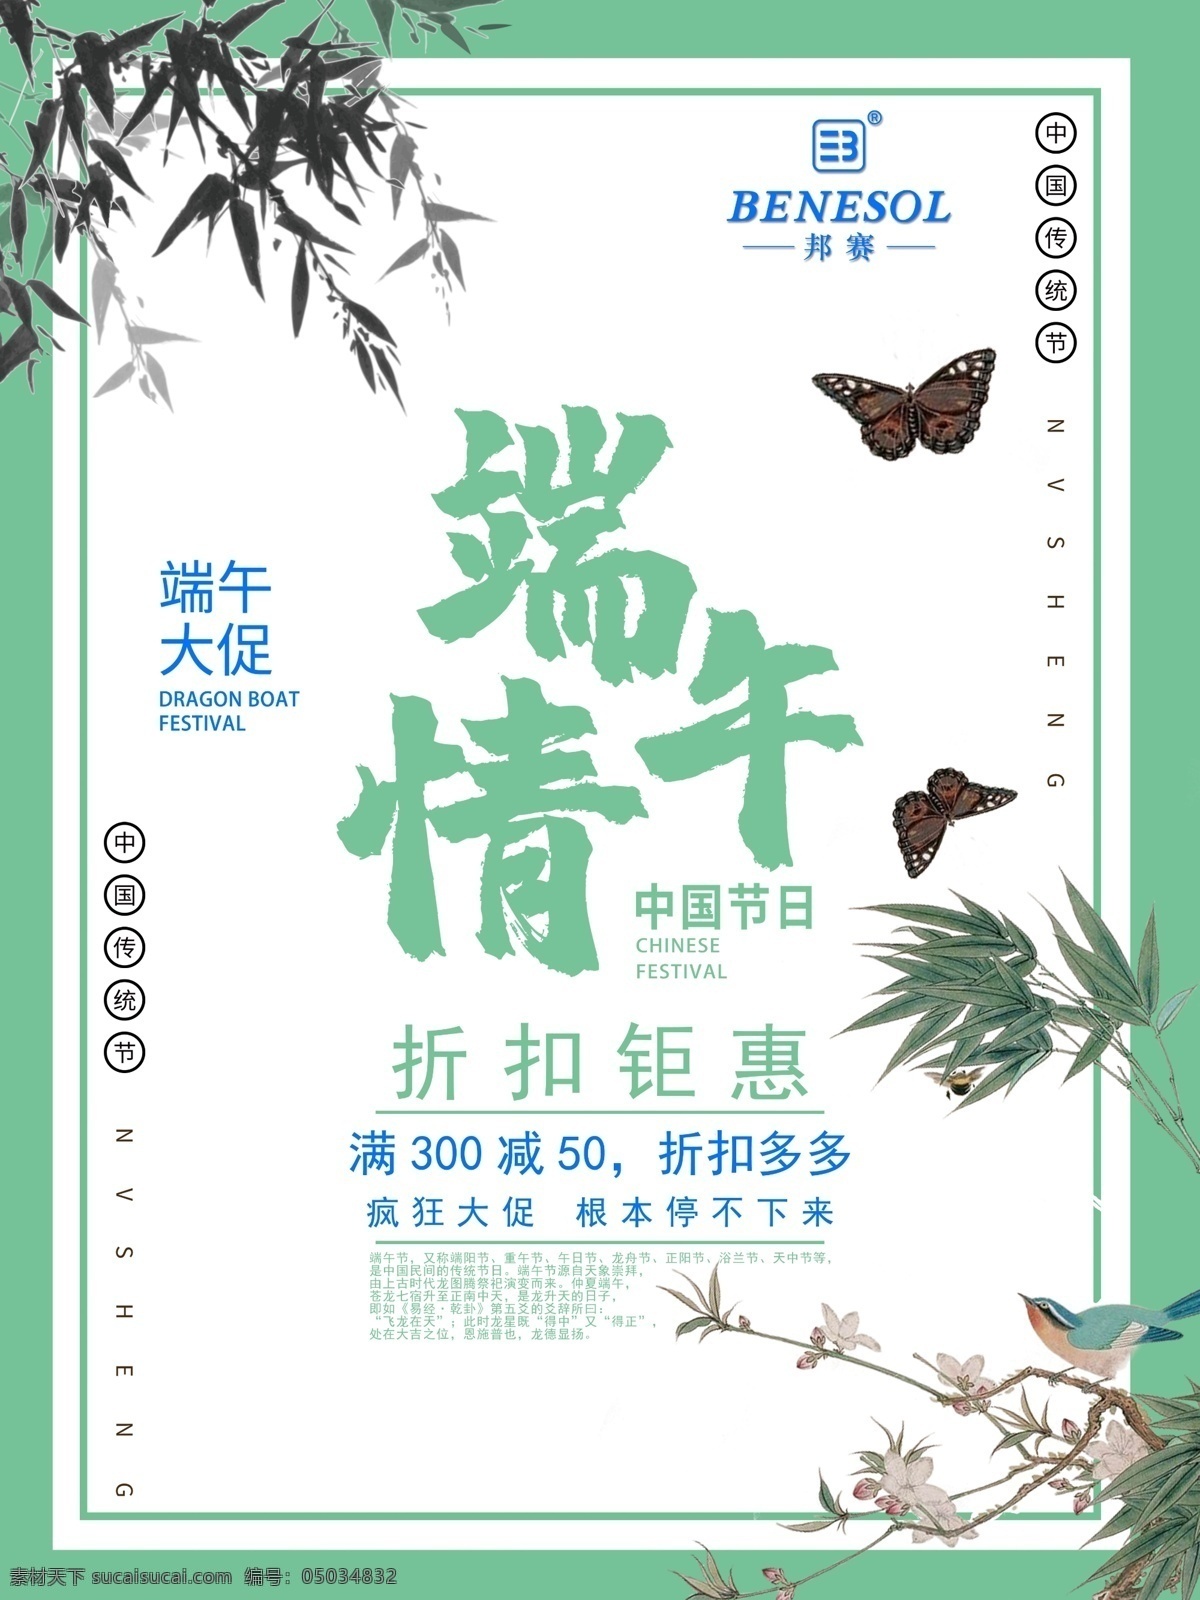 端午节 端午情 绿色 中国风 蝴蝶 促销活动